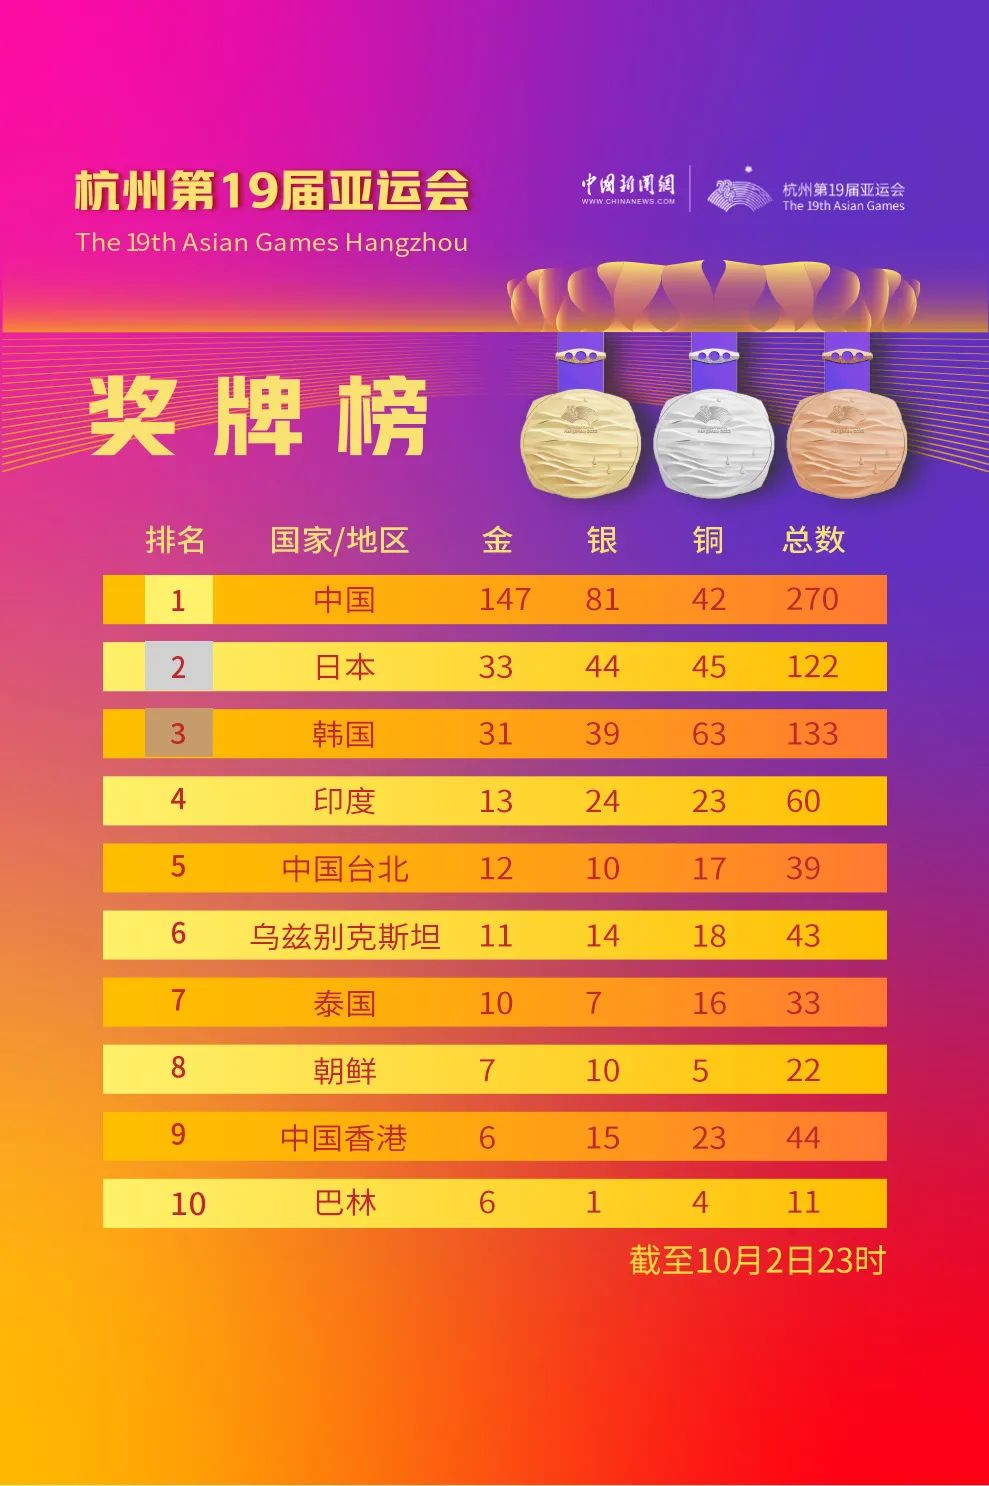 中国队单日又添14金，首次获得亚运马术项目金牌